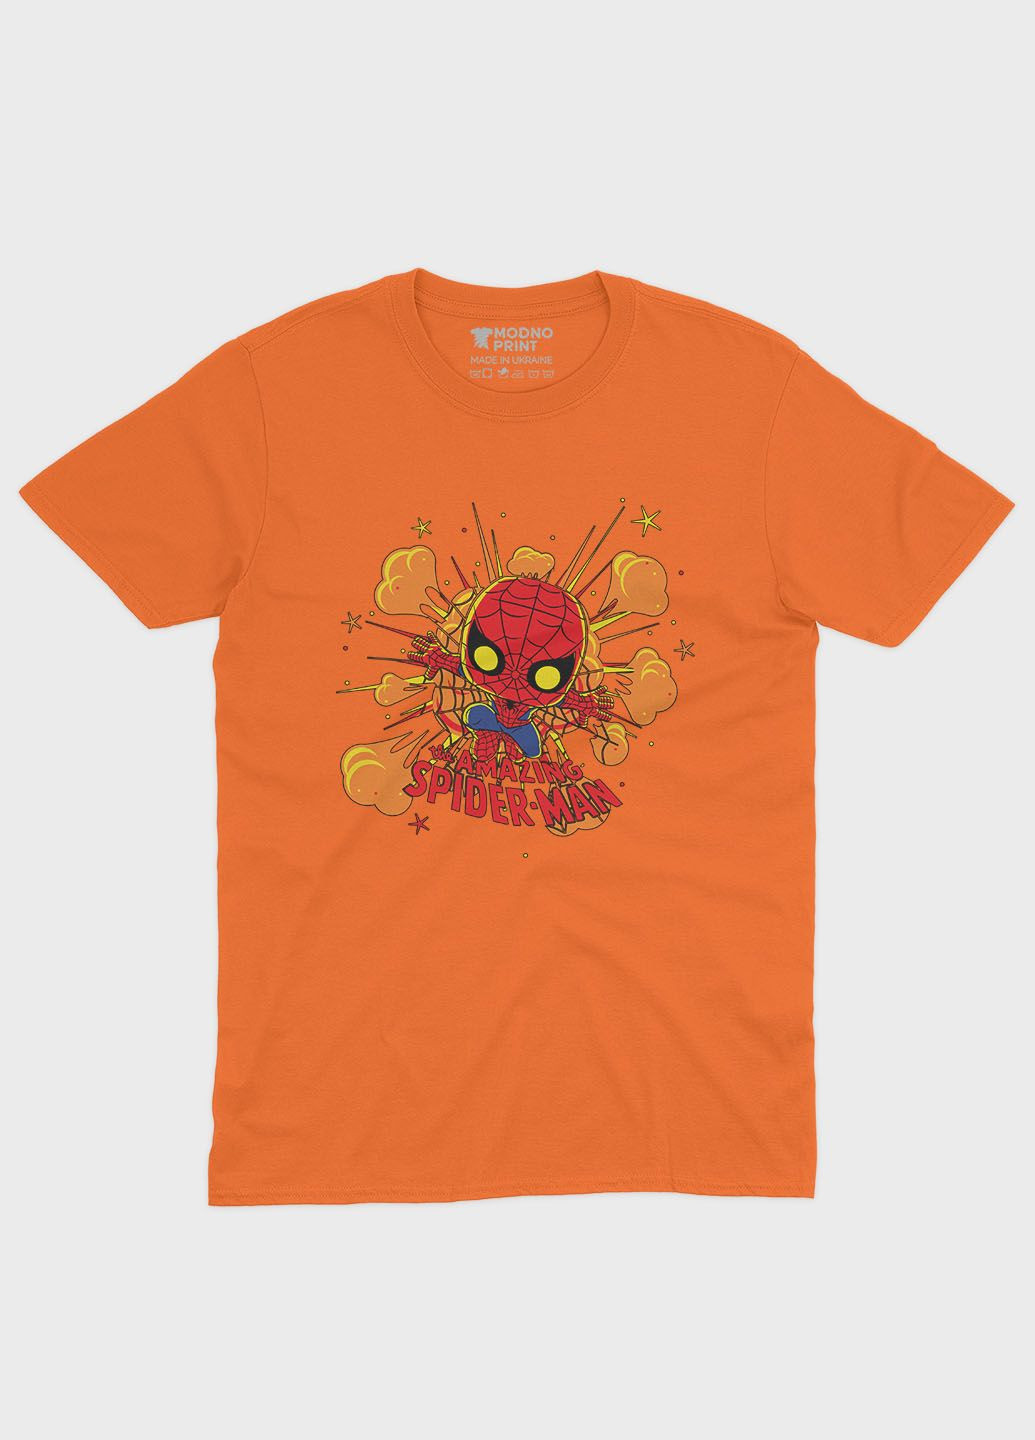 Оранжевая демисезонная футболка для мальчика с принтом супергероя - человек-паук (ts001-1-ora-006-014-056-b) Modno